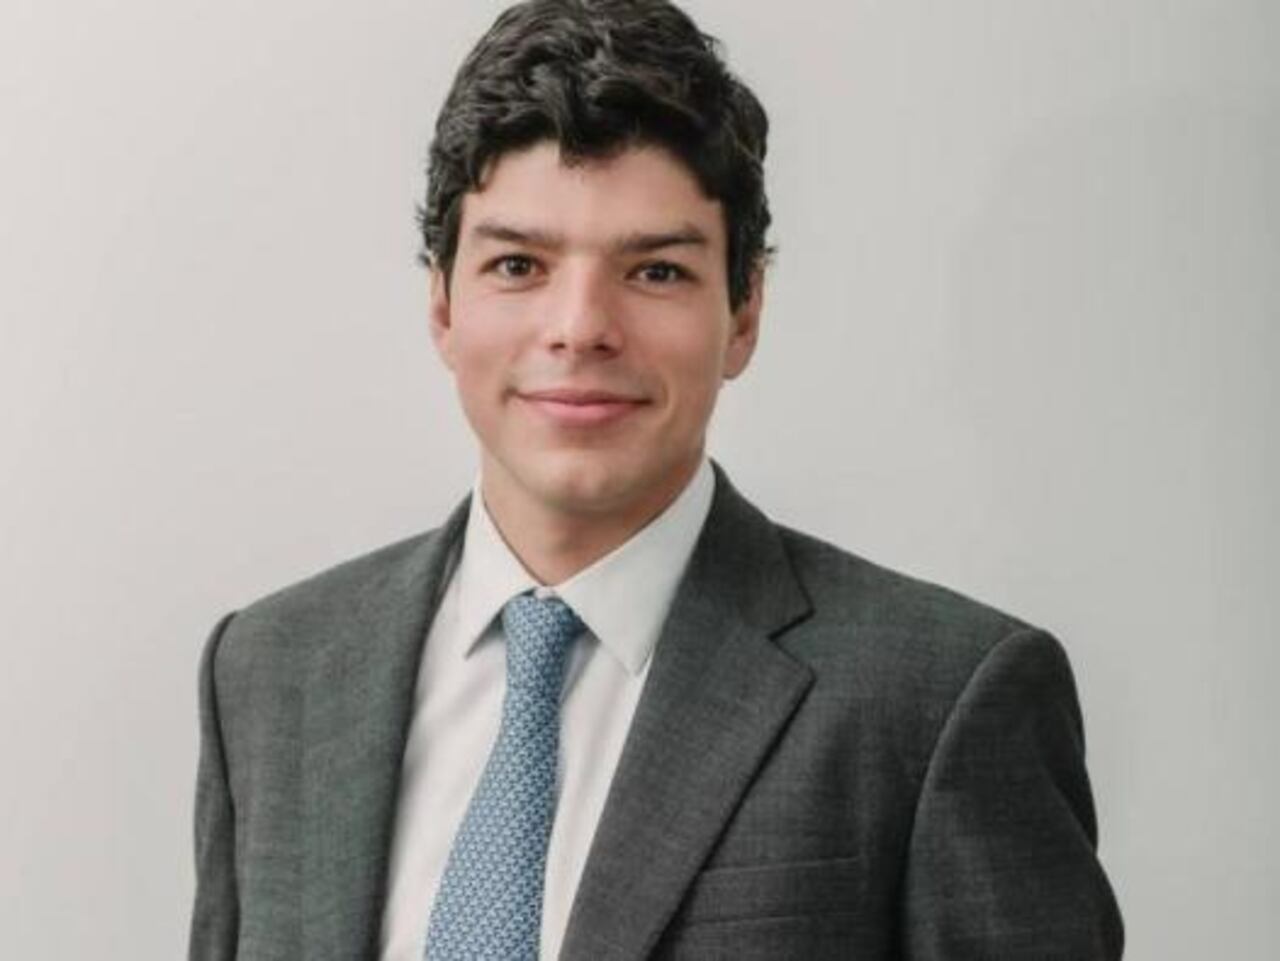 Felipe Pinilla de Brigard
Asociación Nacional de Productores de Leche, Analac